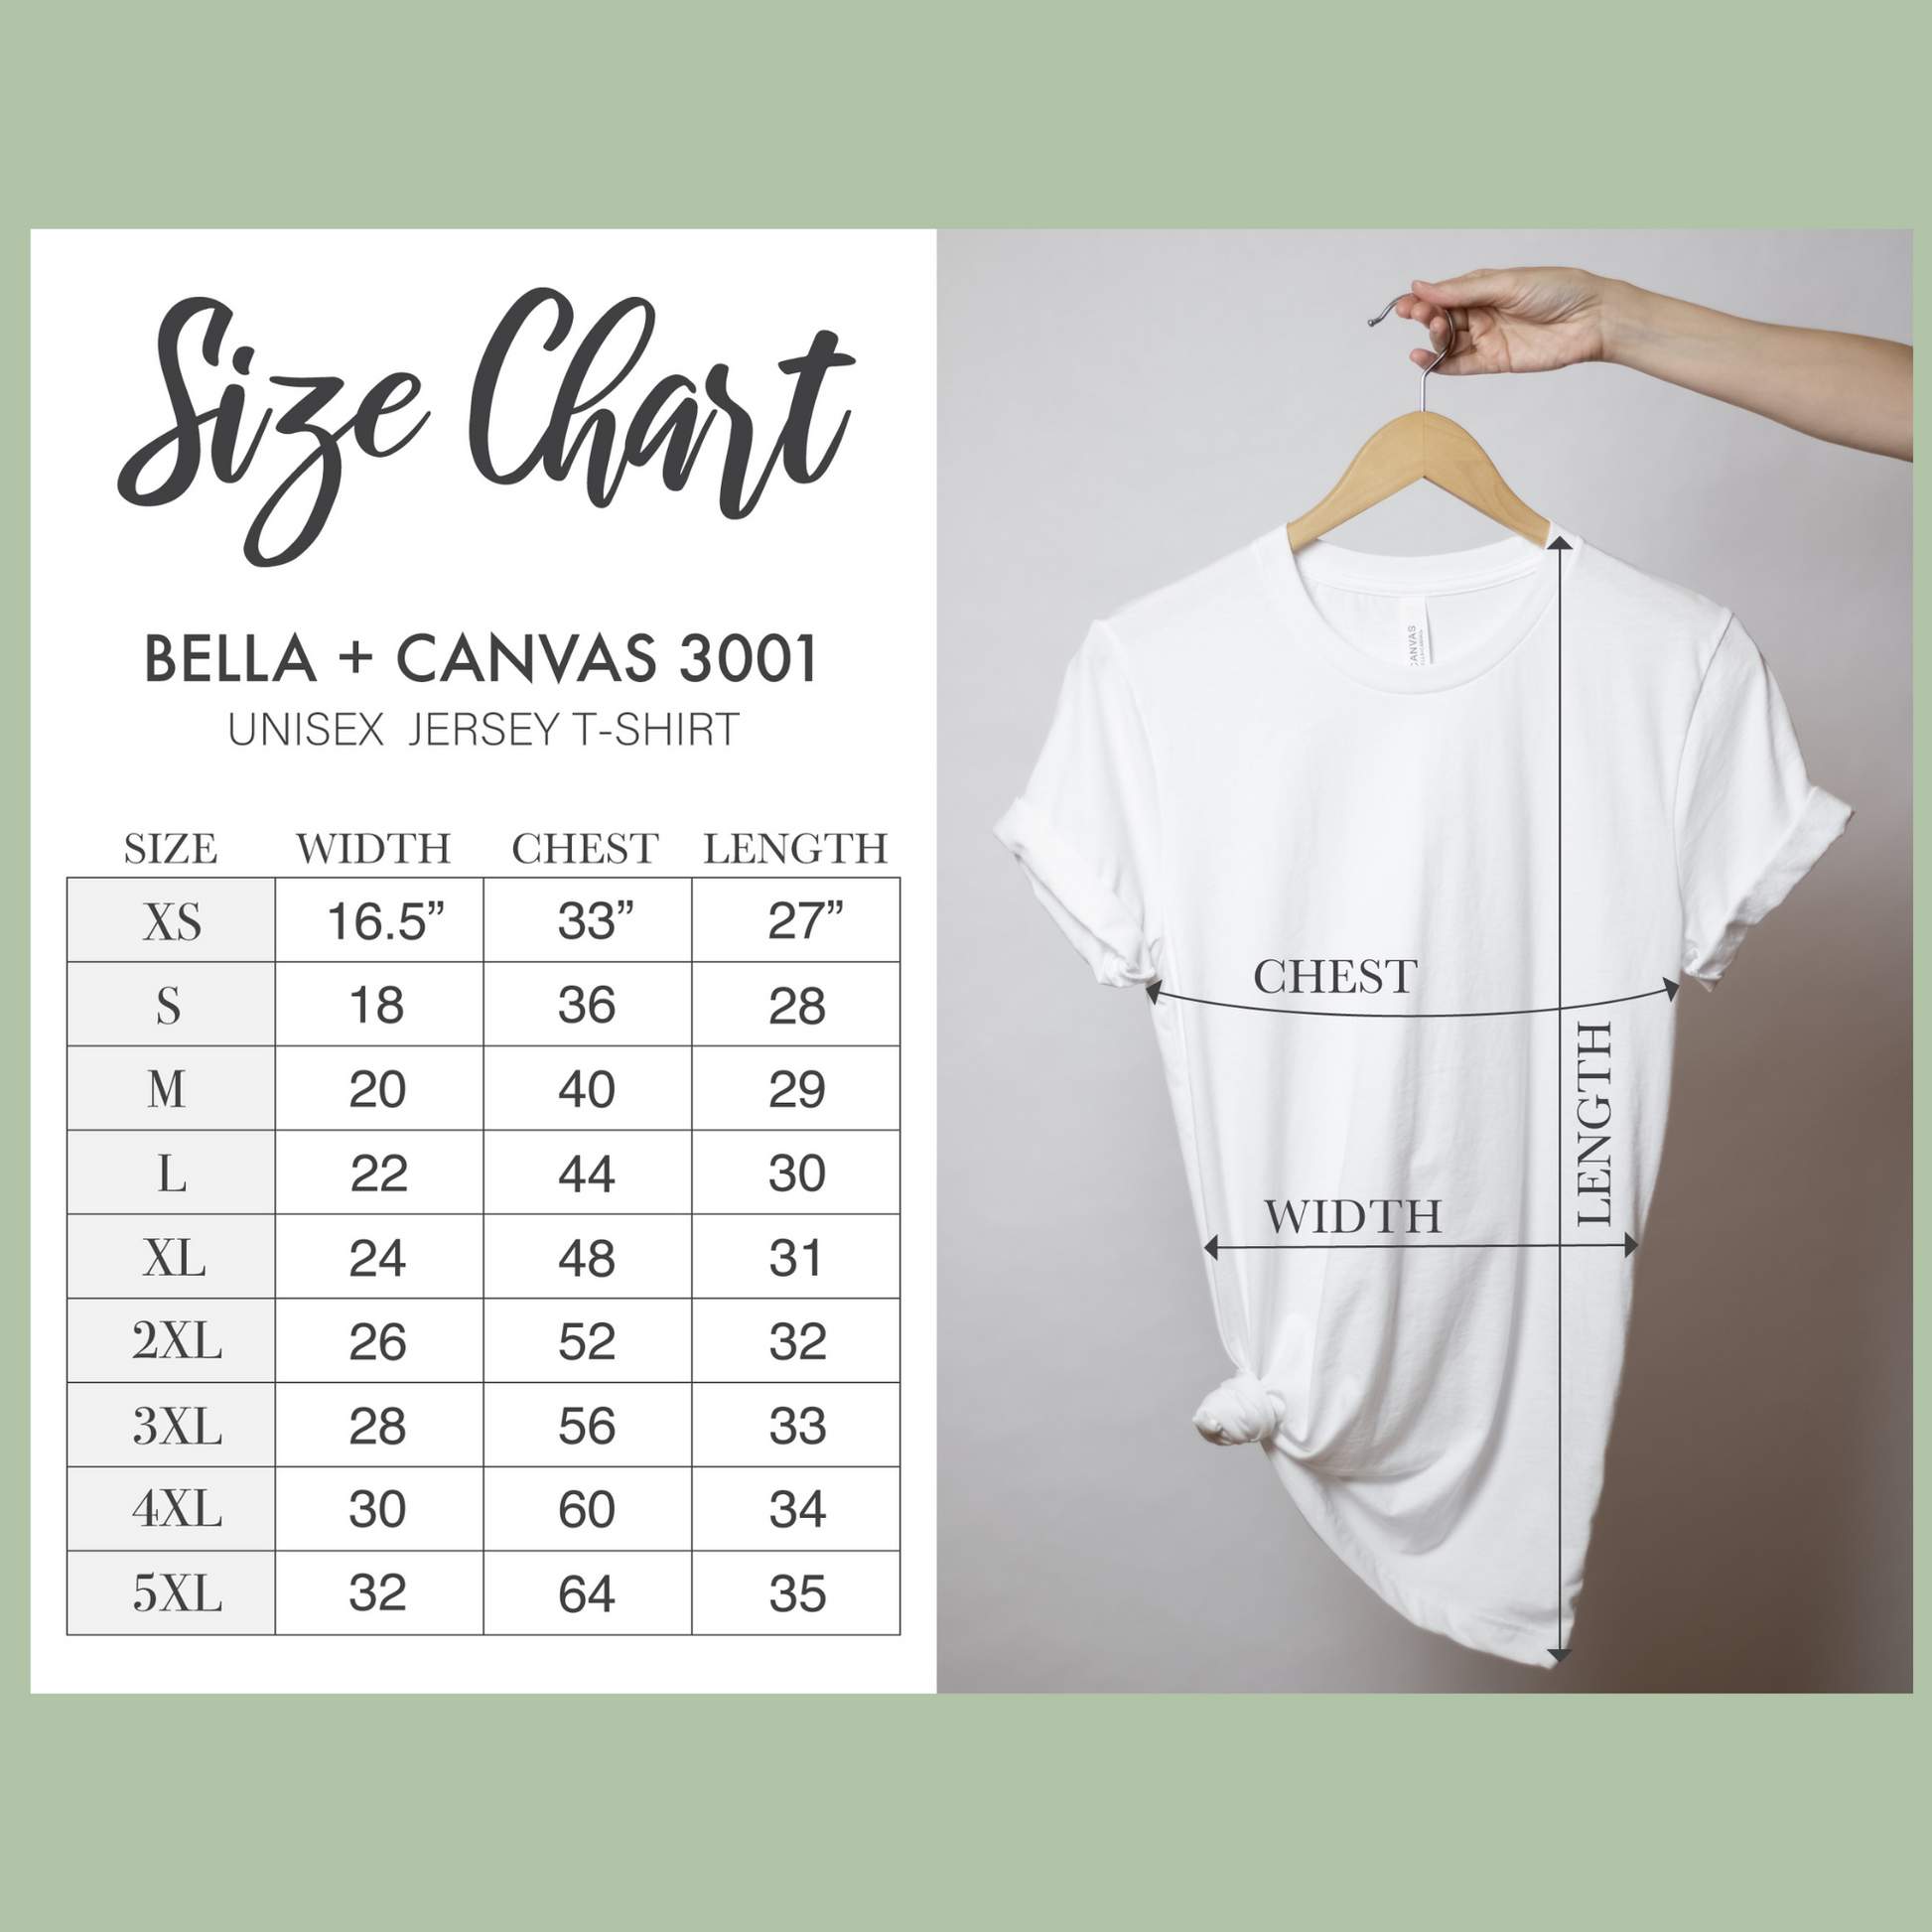 Bella + Canvas 3001 Unisex Jersey T-shirt Sizing Chart